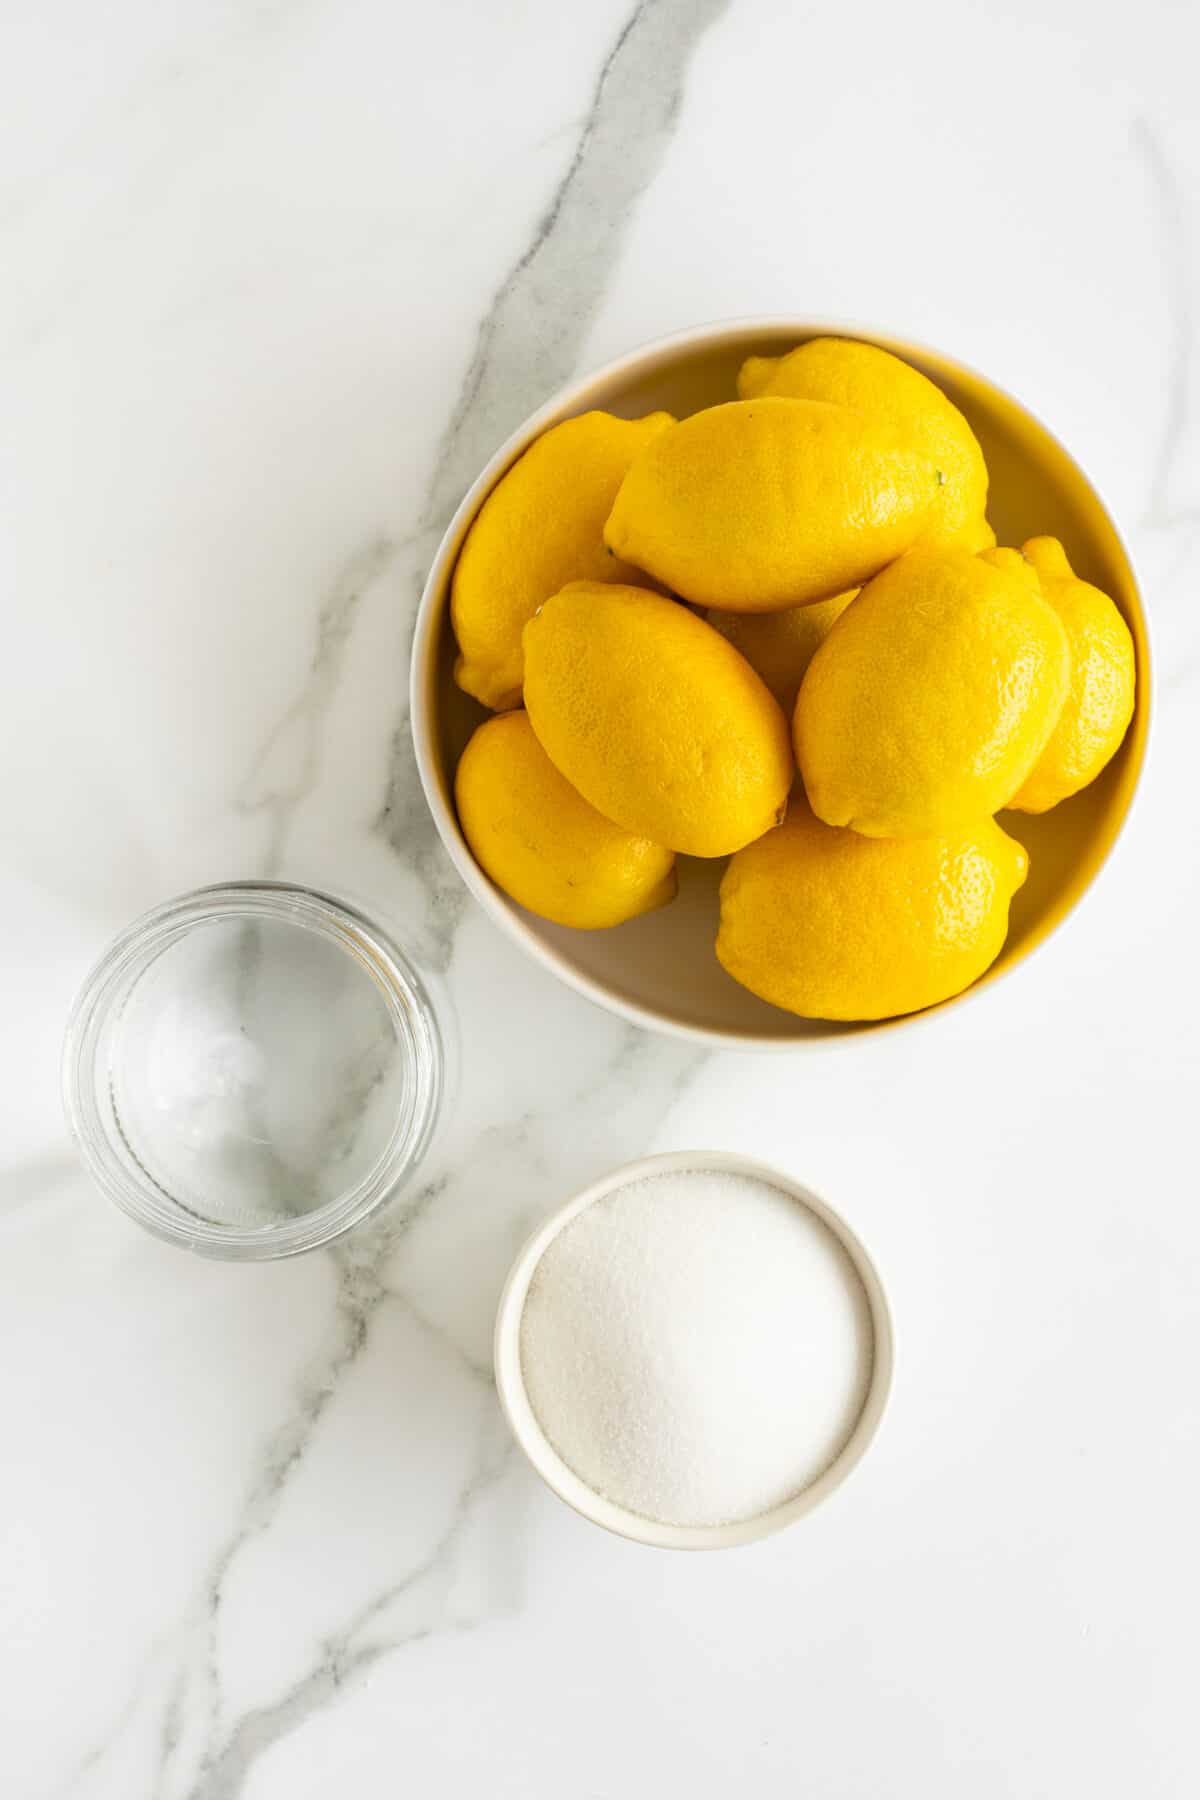 fresh lemonade ingredients, lemons sugar and water in separate bowls